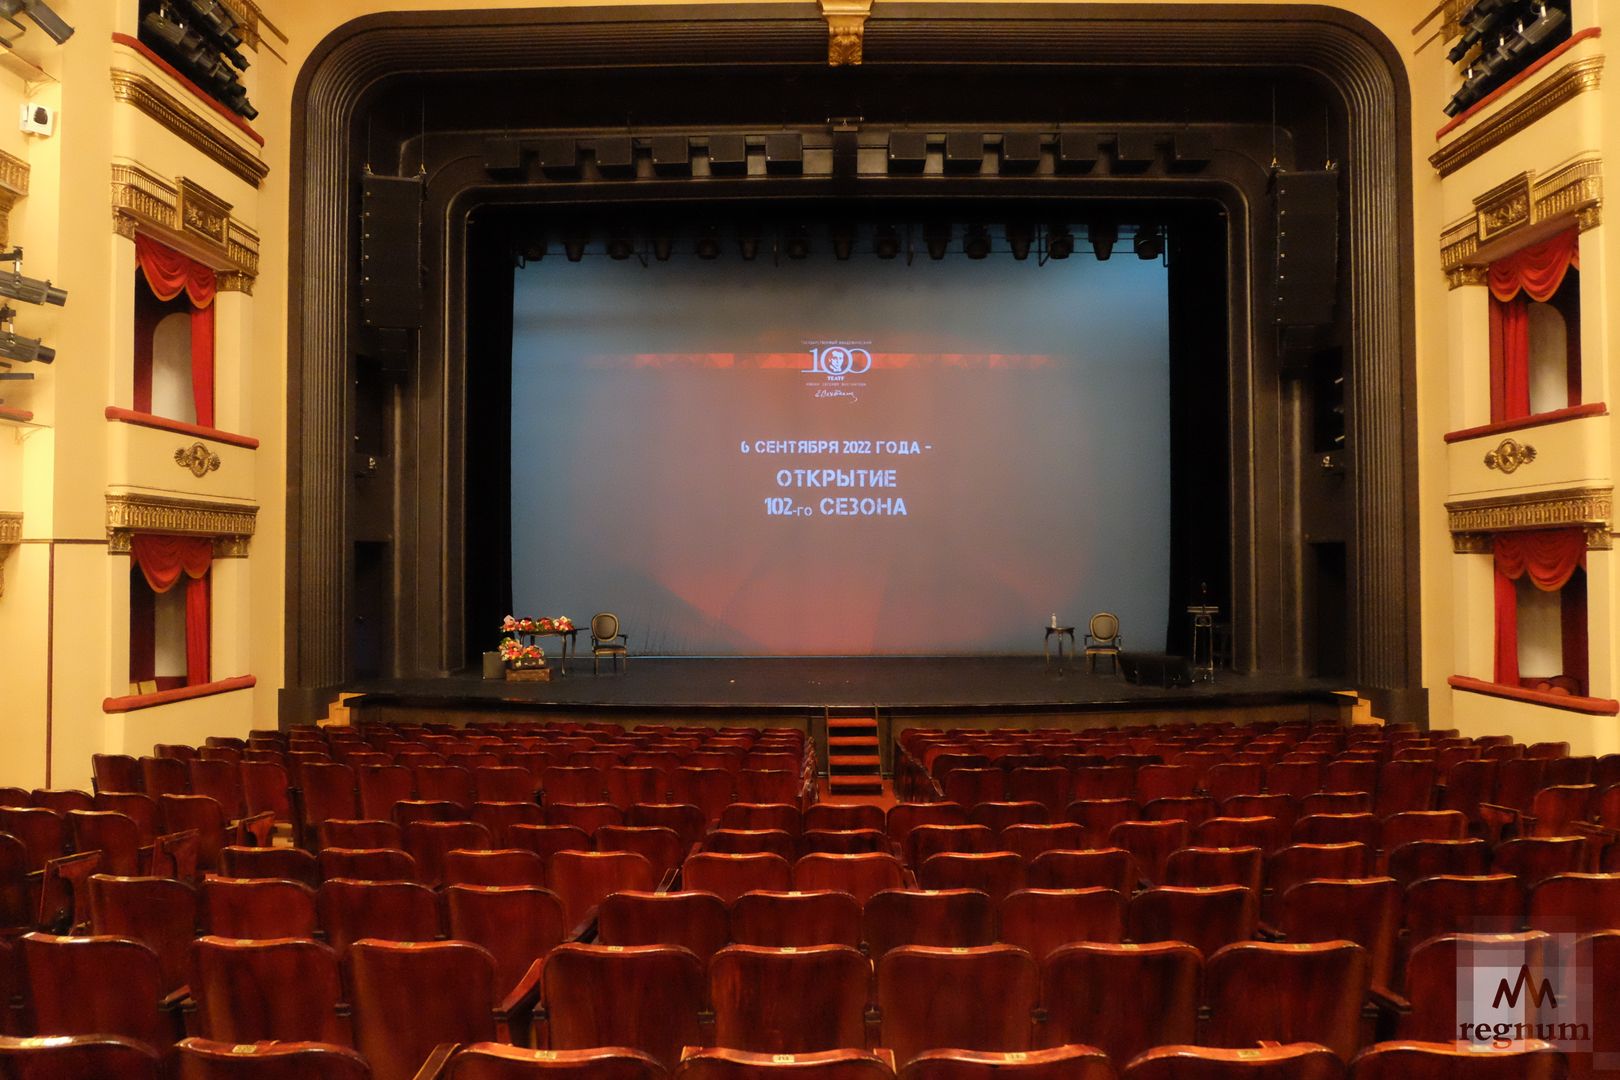 Театр вахтангова откидные места фото